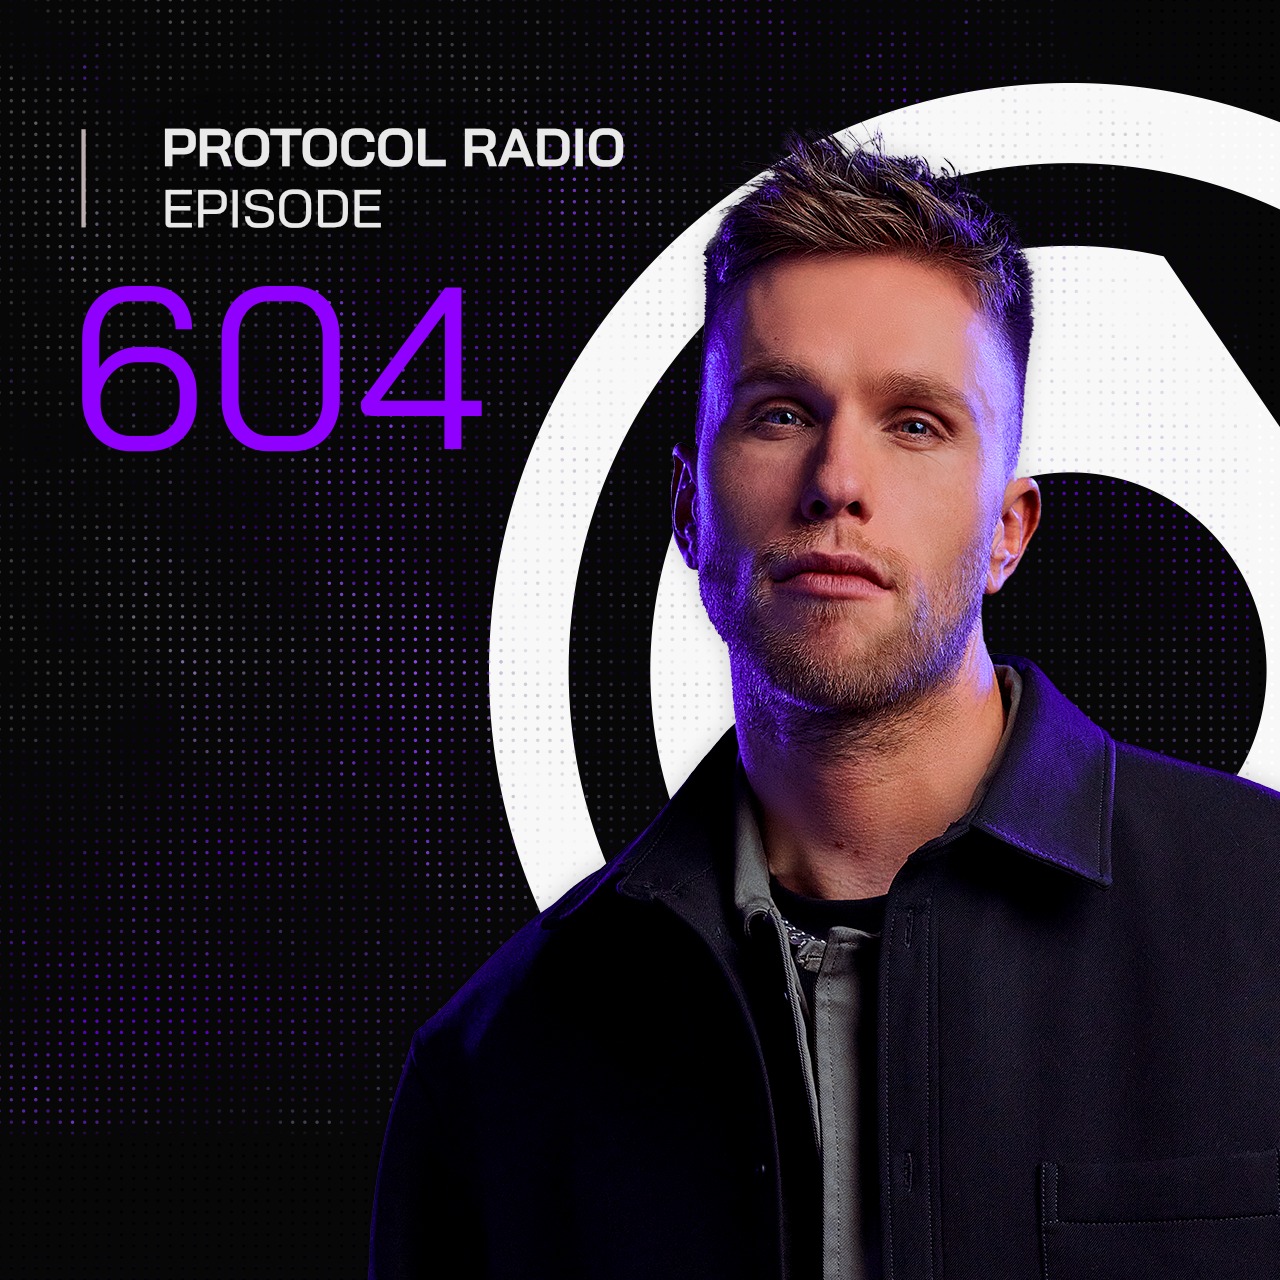 Protocol Radio #604